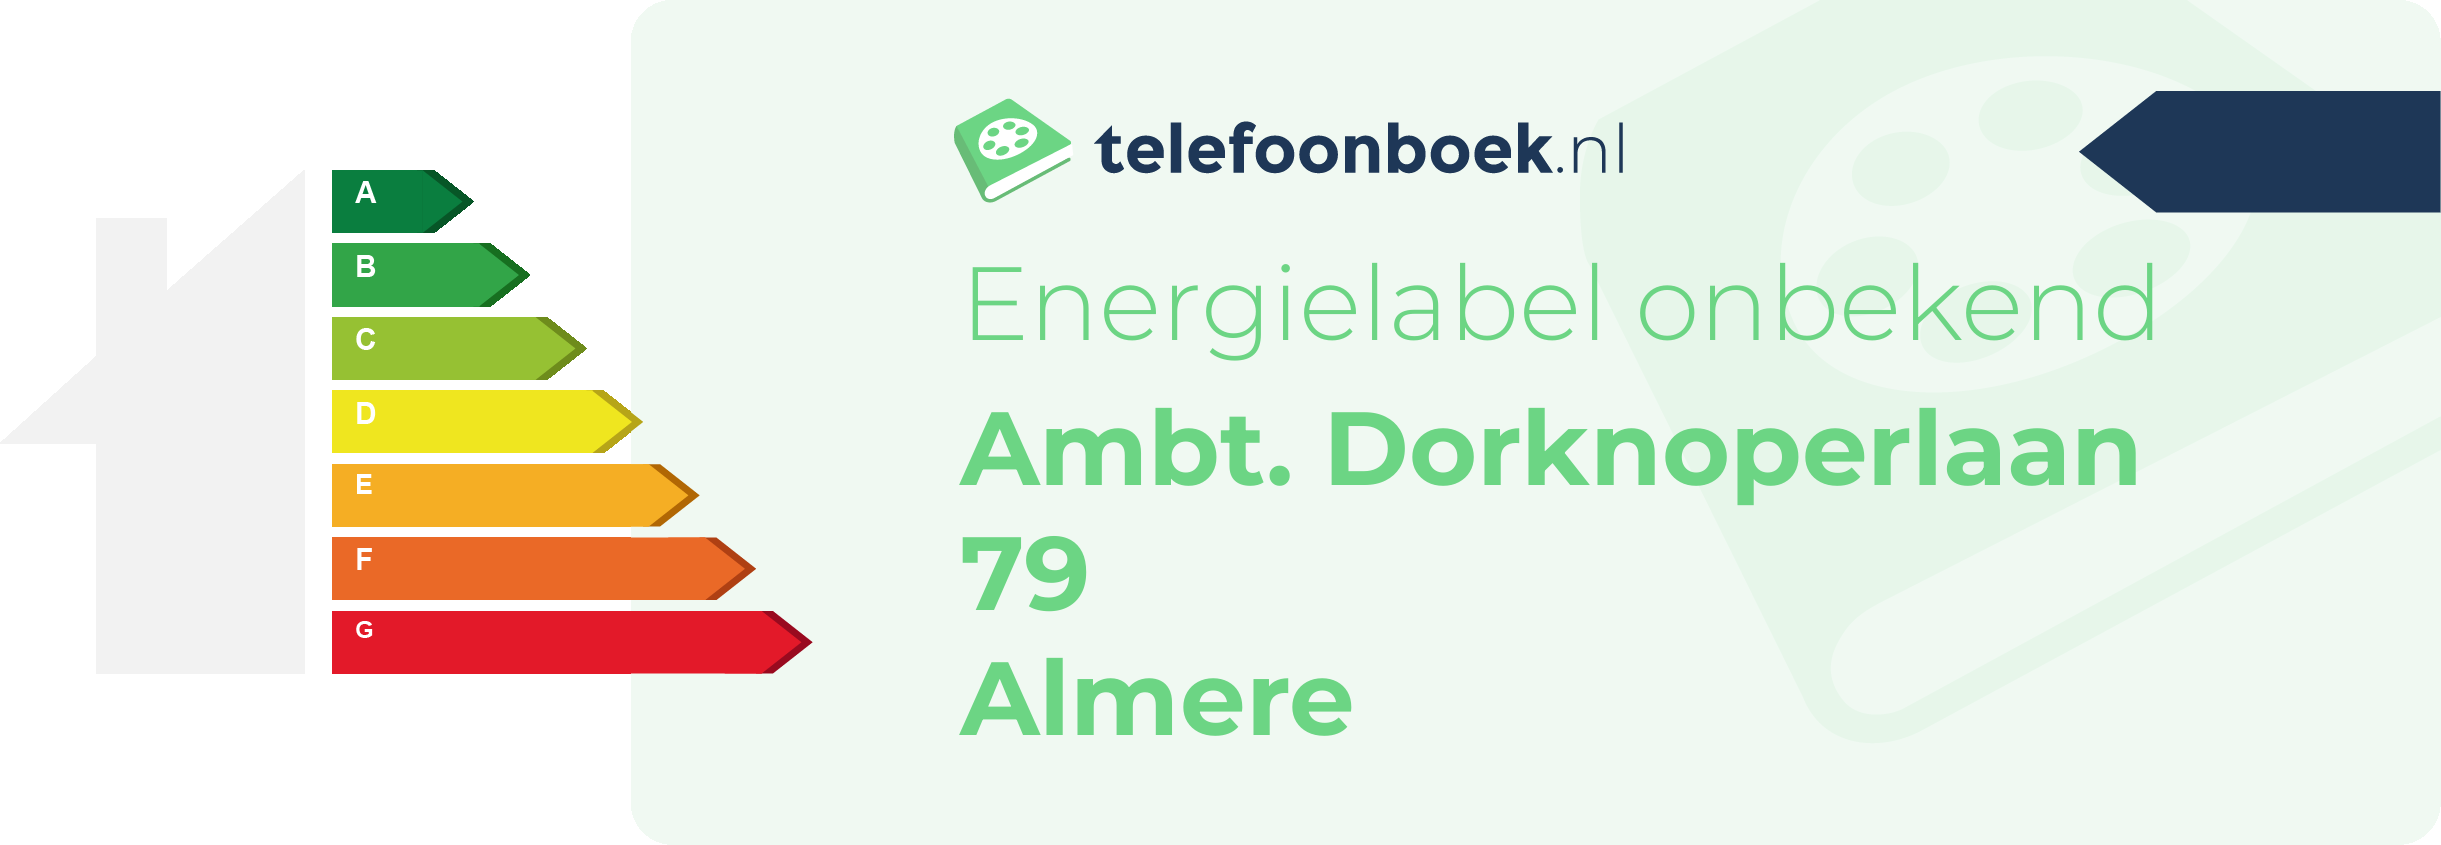 Energielabel Ambt. Dorknoperlaan 79 Almere